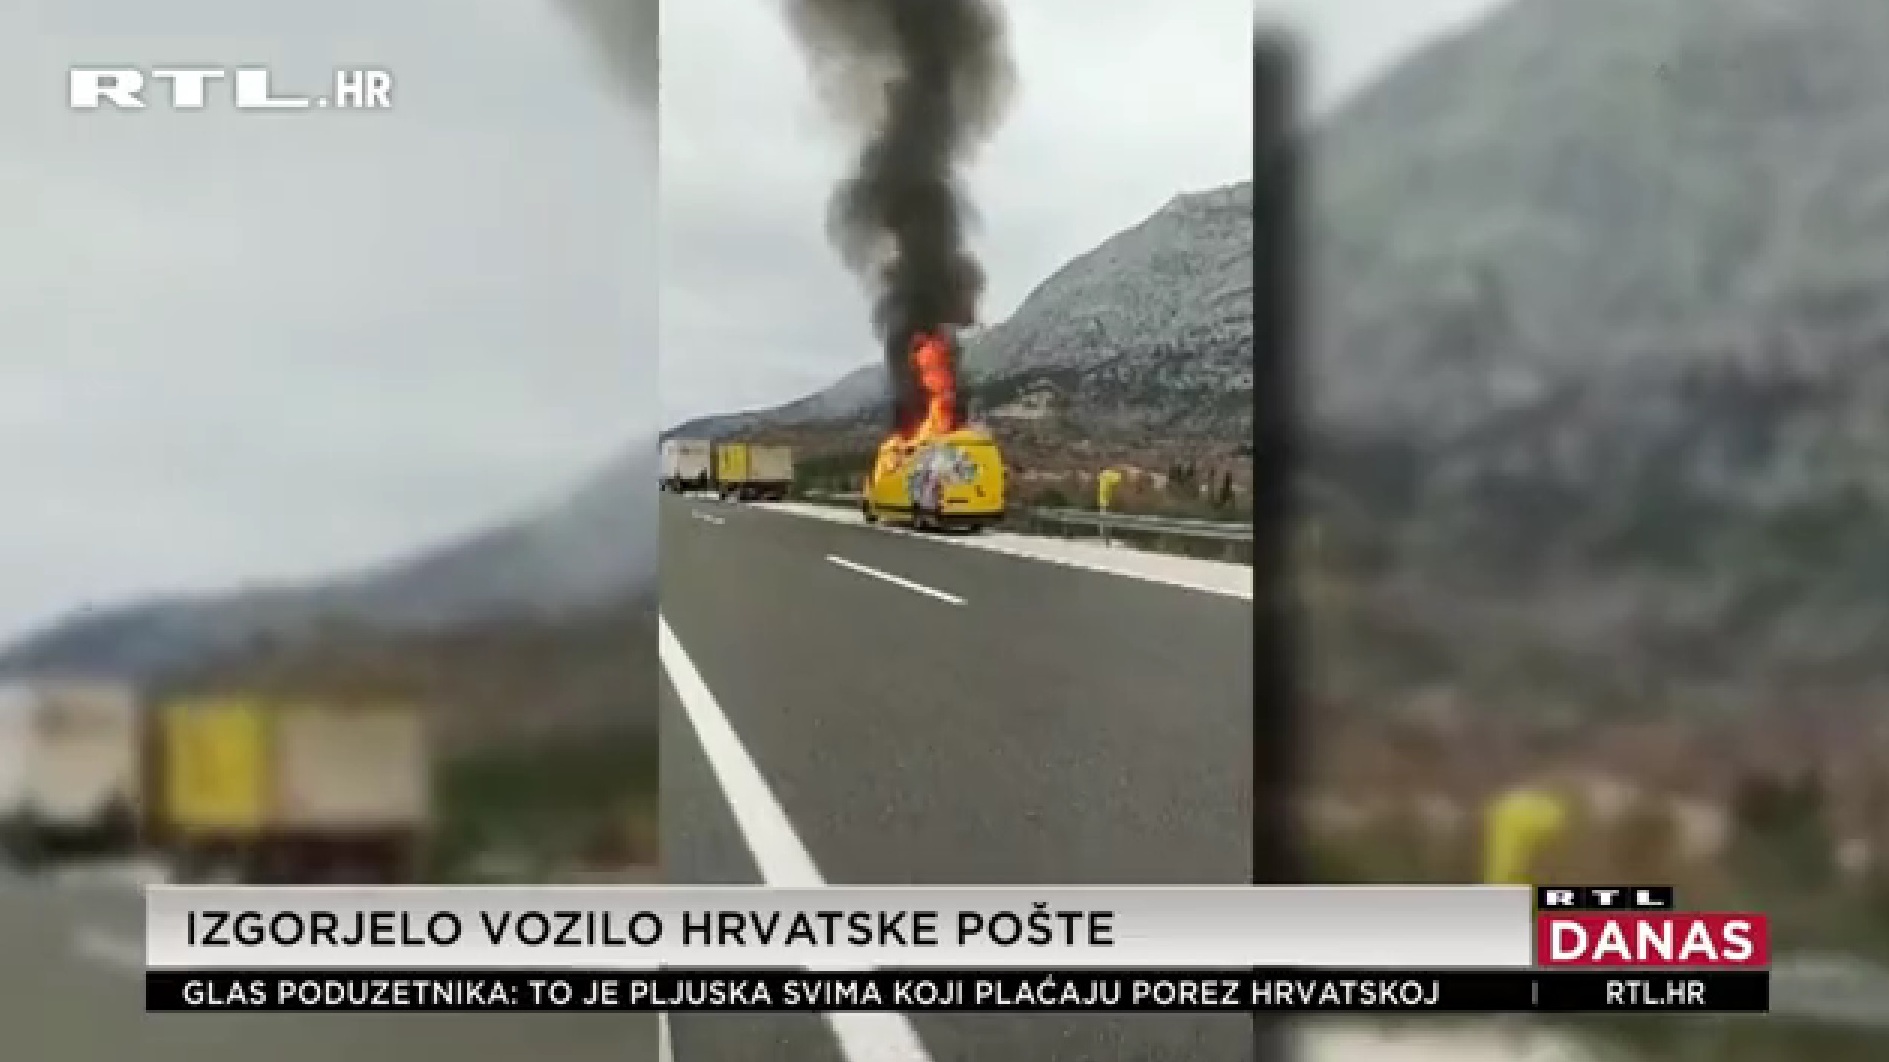 Policija utvrdila okolnosti pod kojima se zapalilo vozilo Hrvatske pošte; šteta 100.000 kuna